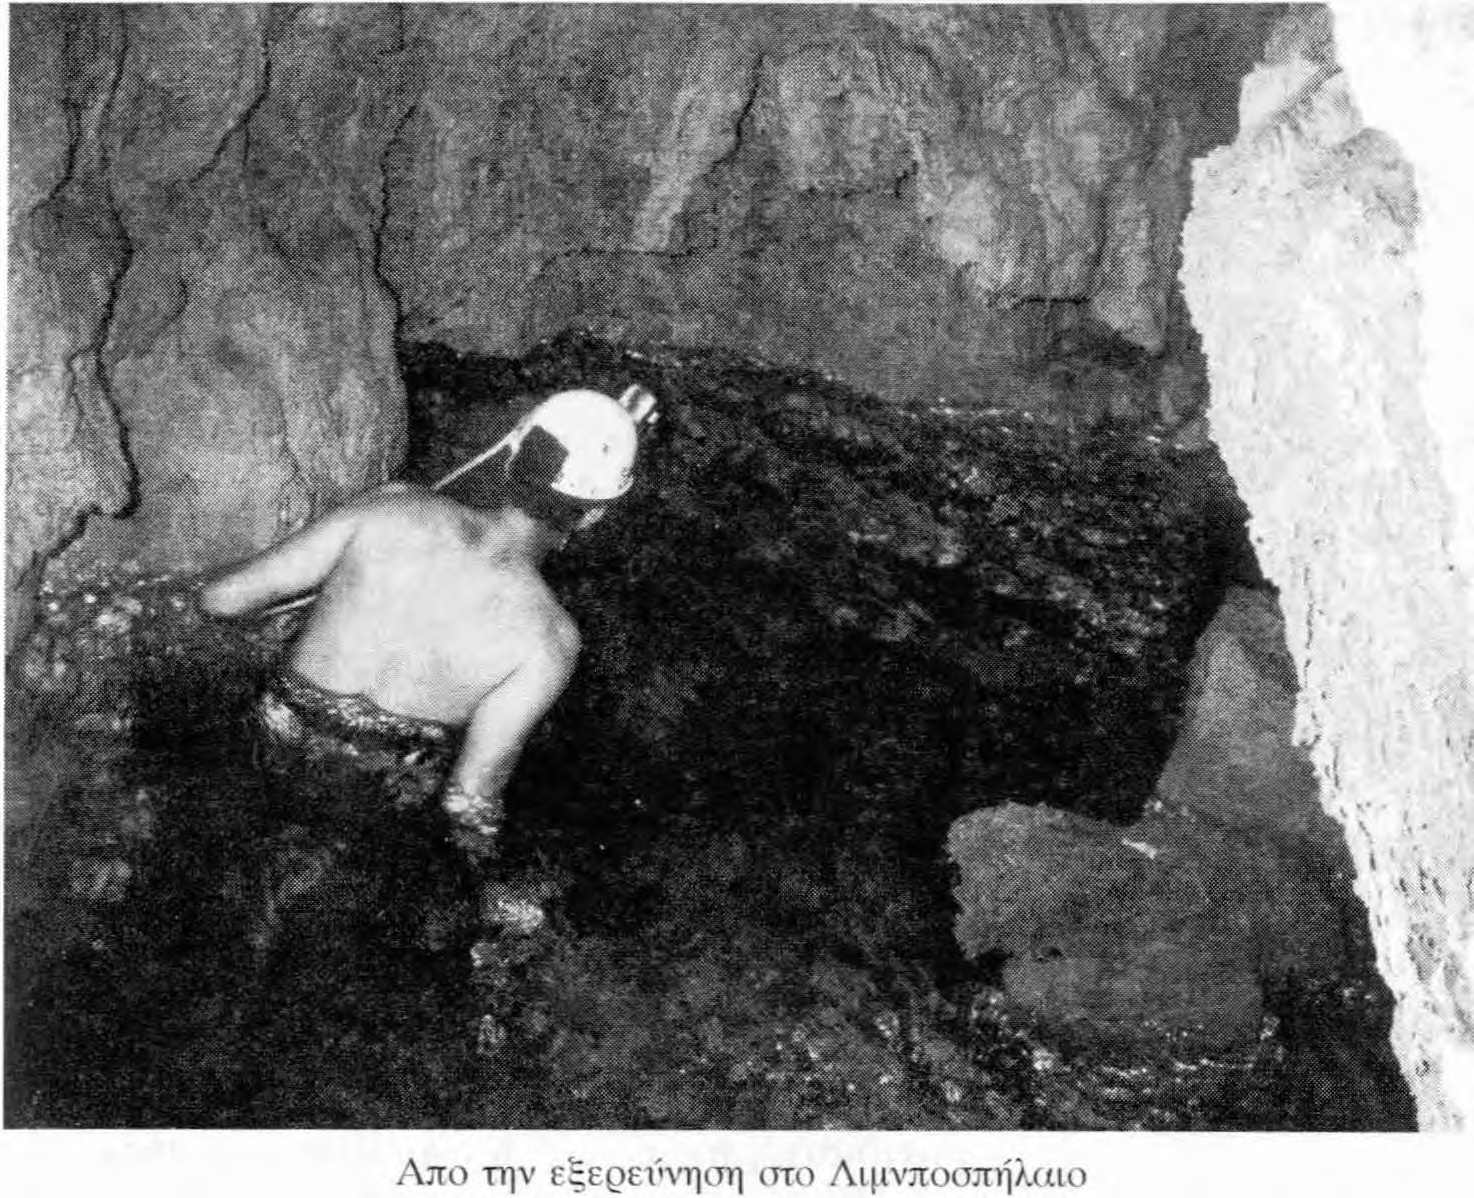 Στο μέσον του δαπέδου του υπάρχει μεγάλη ορθογώνια τομή λαθρανασκαφής, ε νώ στο σπήλαιο βρέθηκαν και άλλα ίχνη αρχαιοκαπήλων και θησ αυροθήρω ν, όπω ς σκαπτικά εργαλεία και ένα κόσκινο.